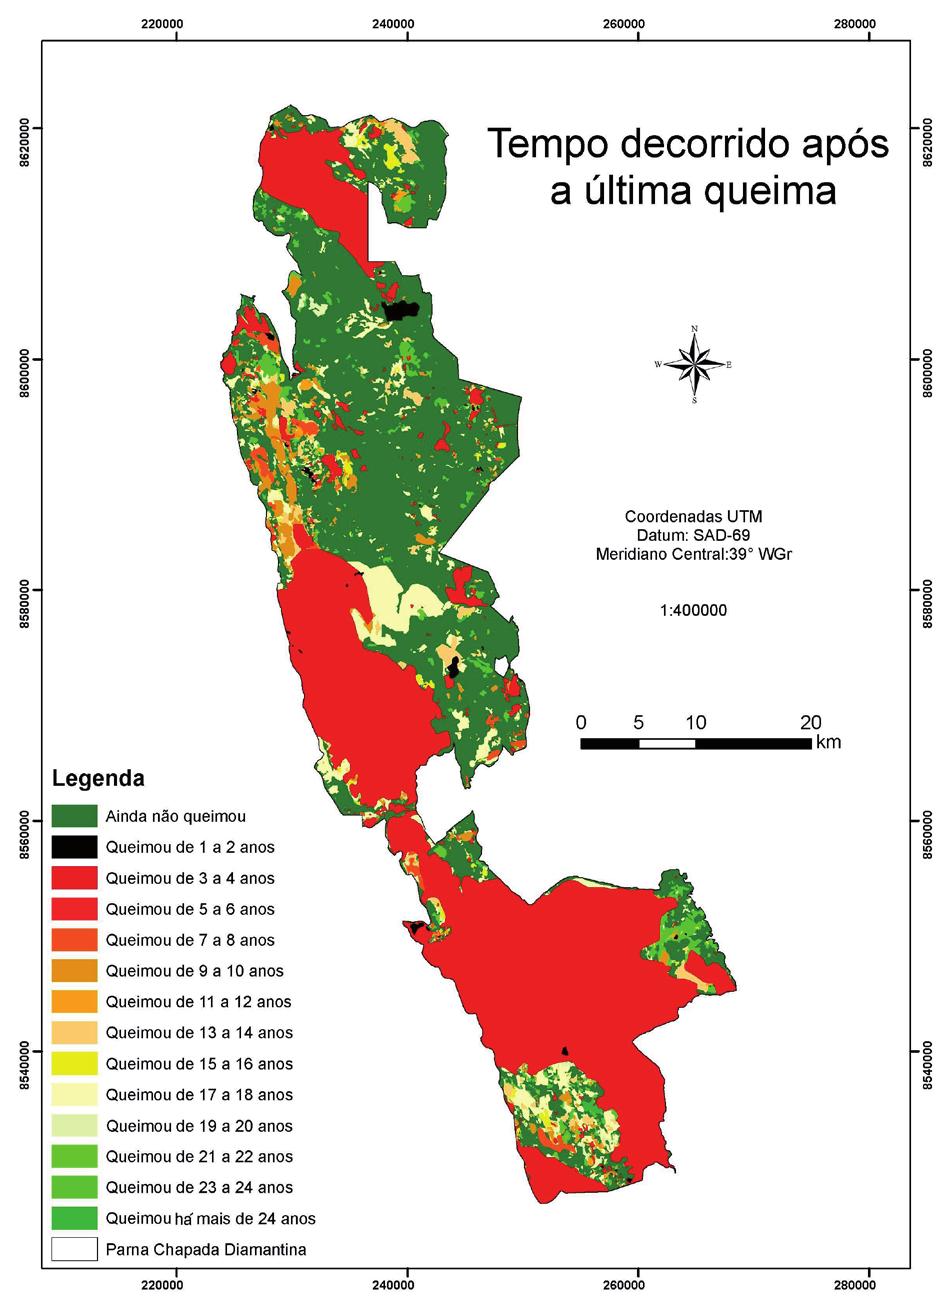 167 Figura 3 Mapa mostrando o tempo decorrido desde o último incêndio em cada área do Parque Nacional da Chapada Diamantina.